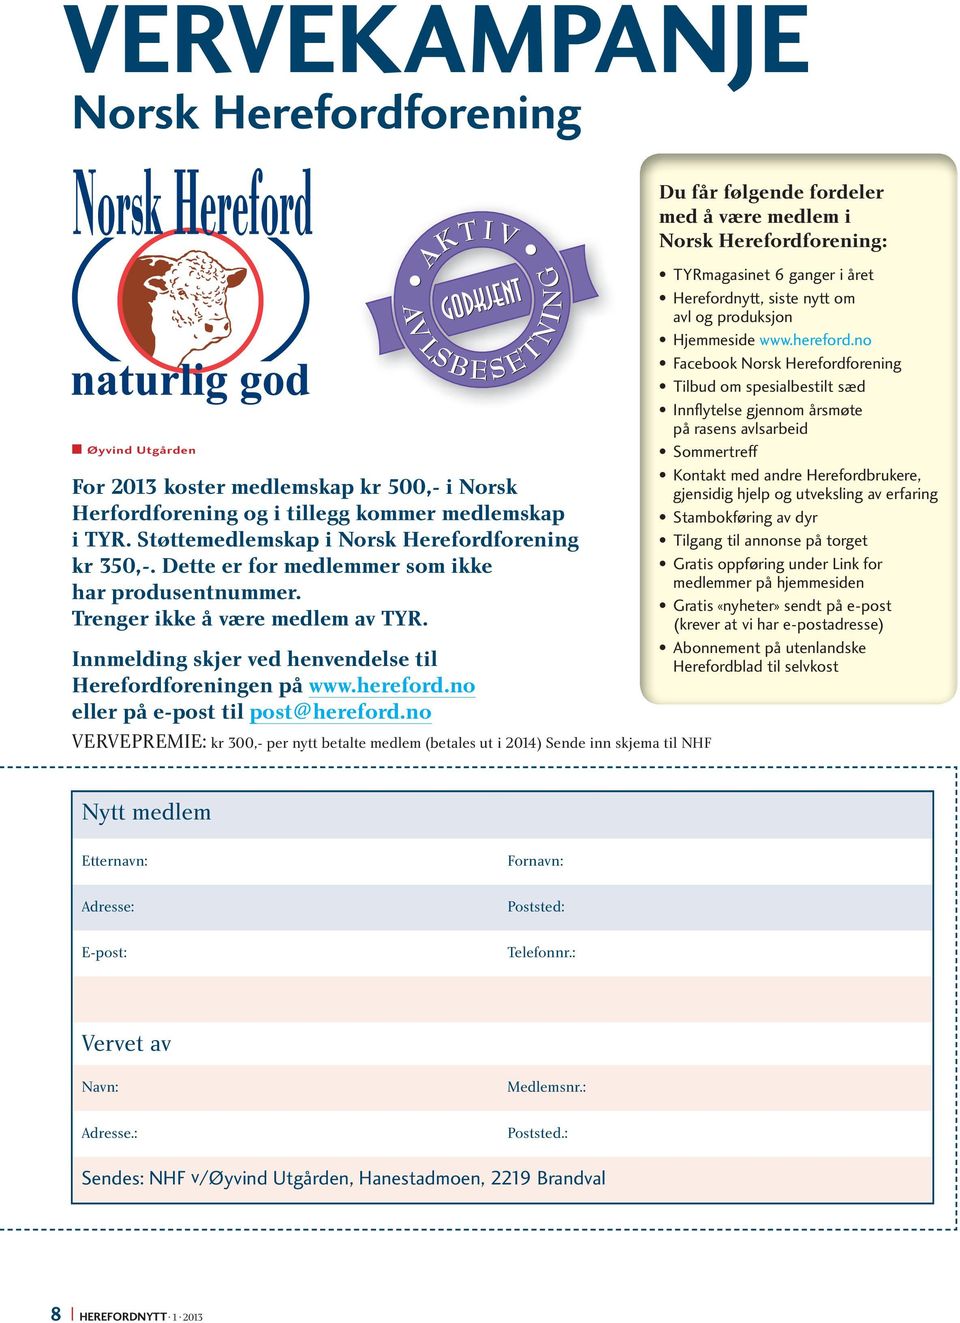 Innmelding skjer ved henvendelse til Herefordforeningen på www.hereford.no eller på e-post til post@hereford.